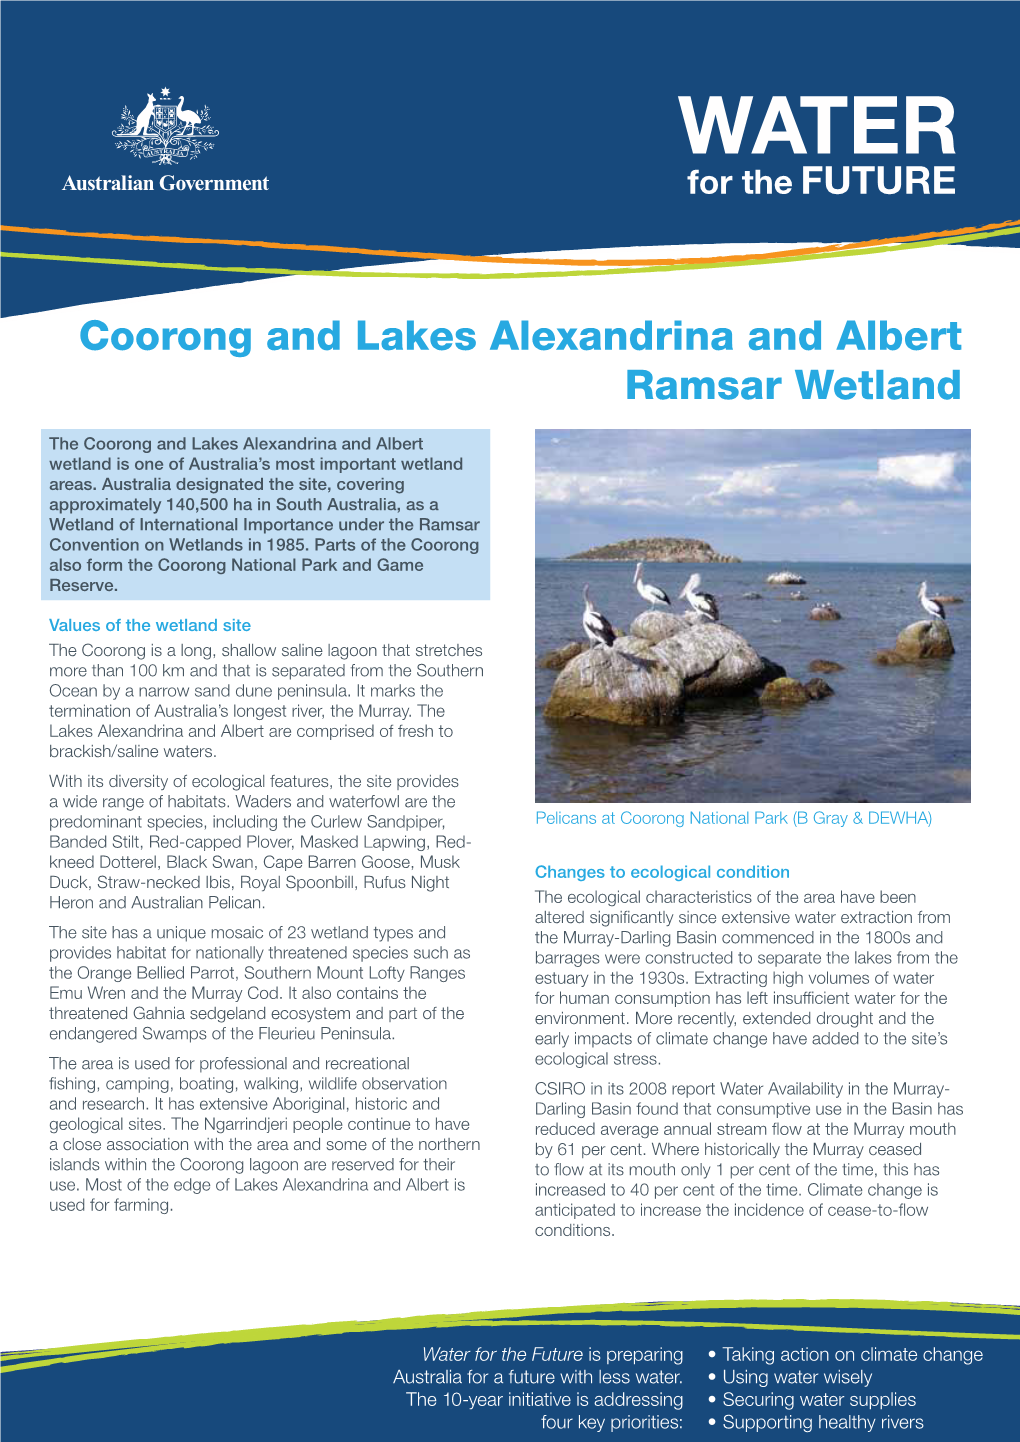 Coorong and Lakes Alexandrina and Albert Ramsar Wetland